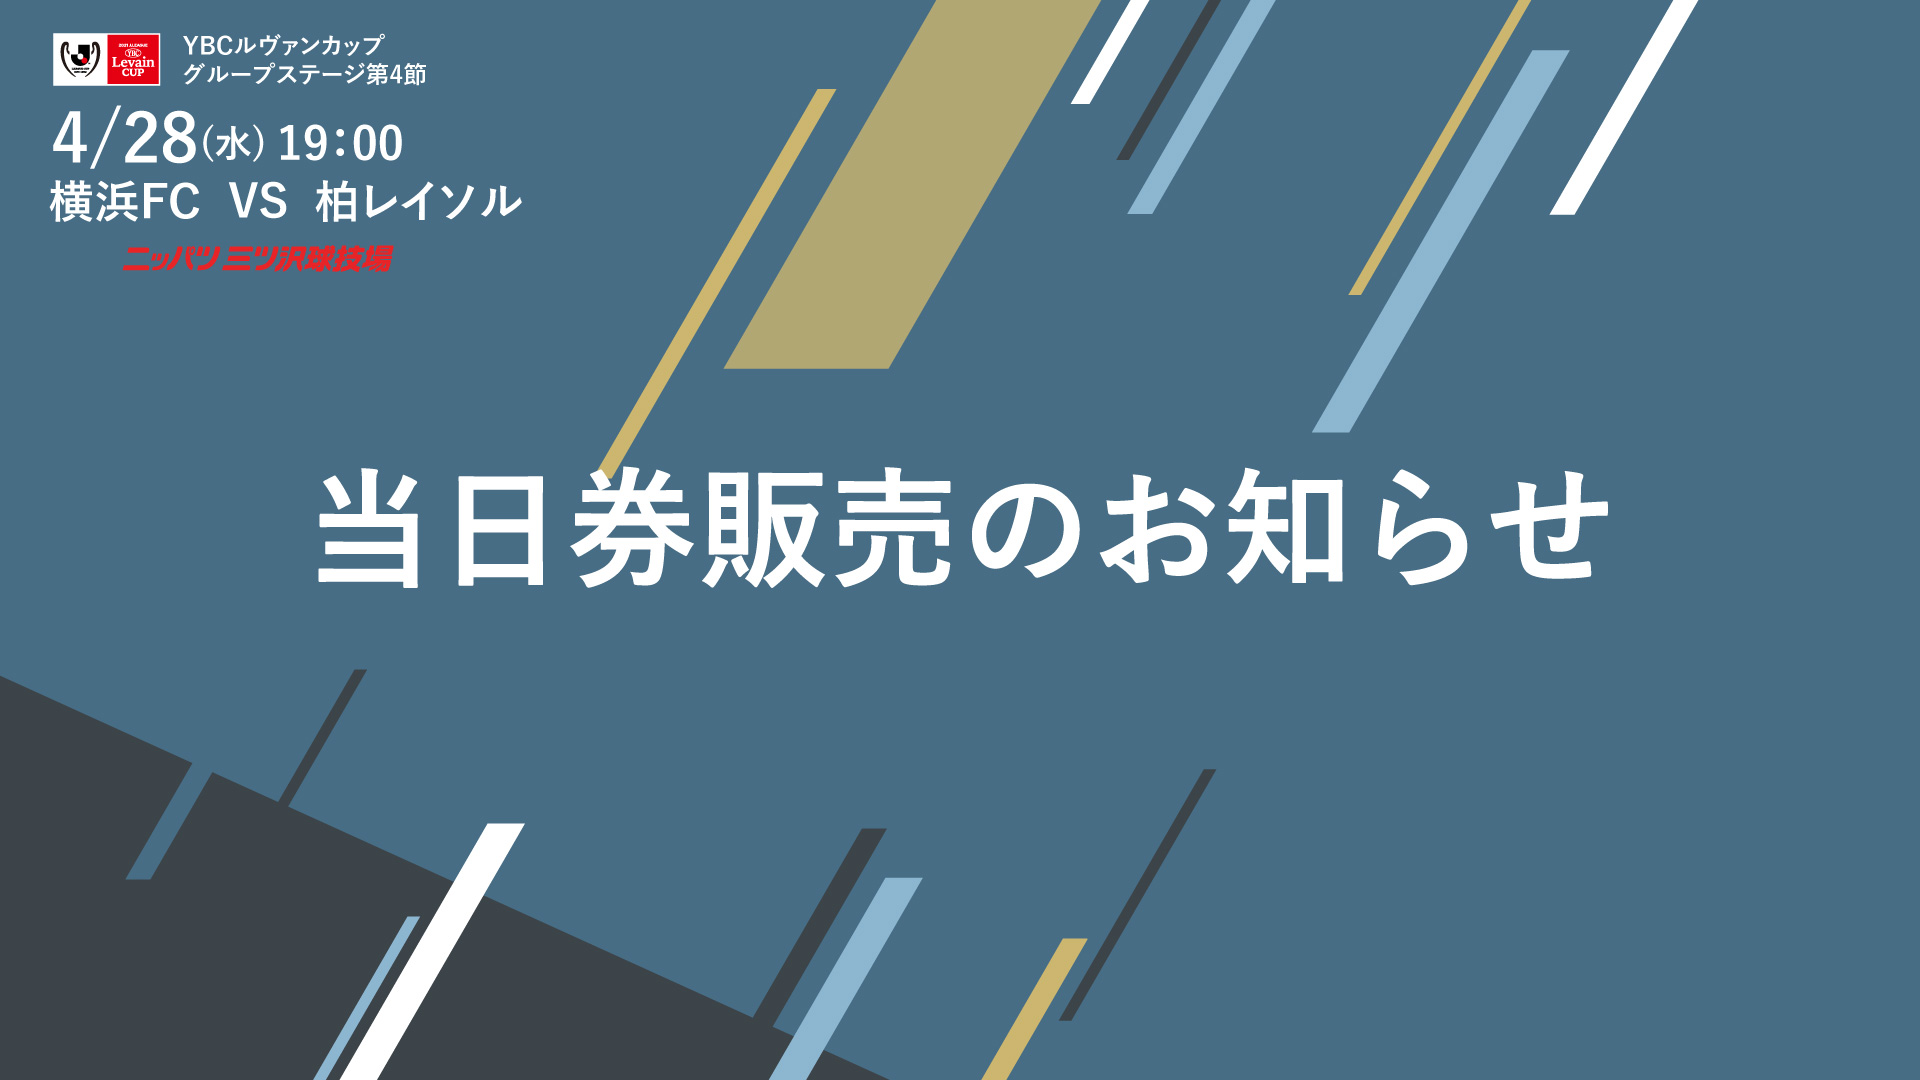 21jリーグybcルヴァンカップ グループステージ第4節柏レイソル戦 当日券販売に関するご案内 横浜fcオフィシャルウェブサイト